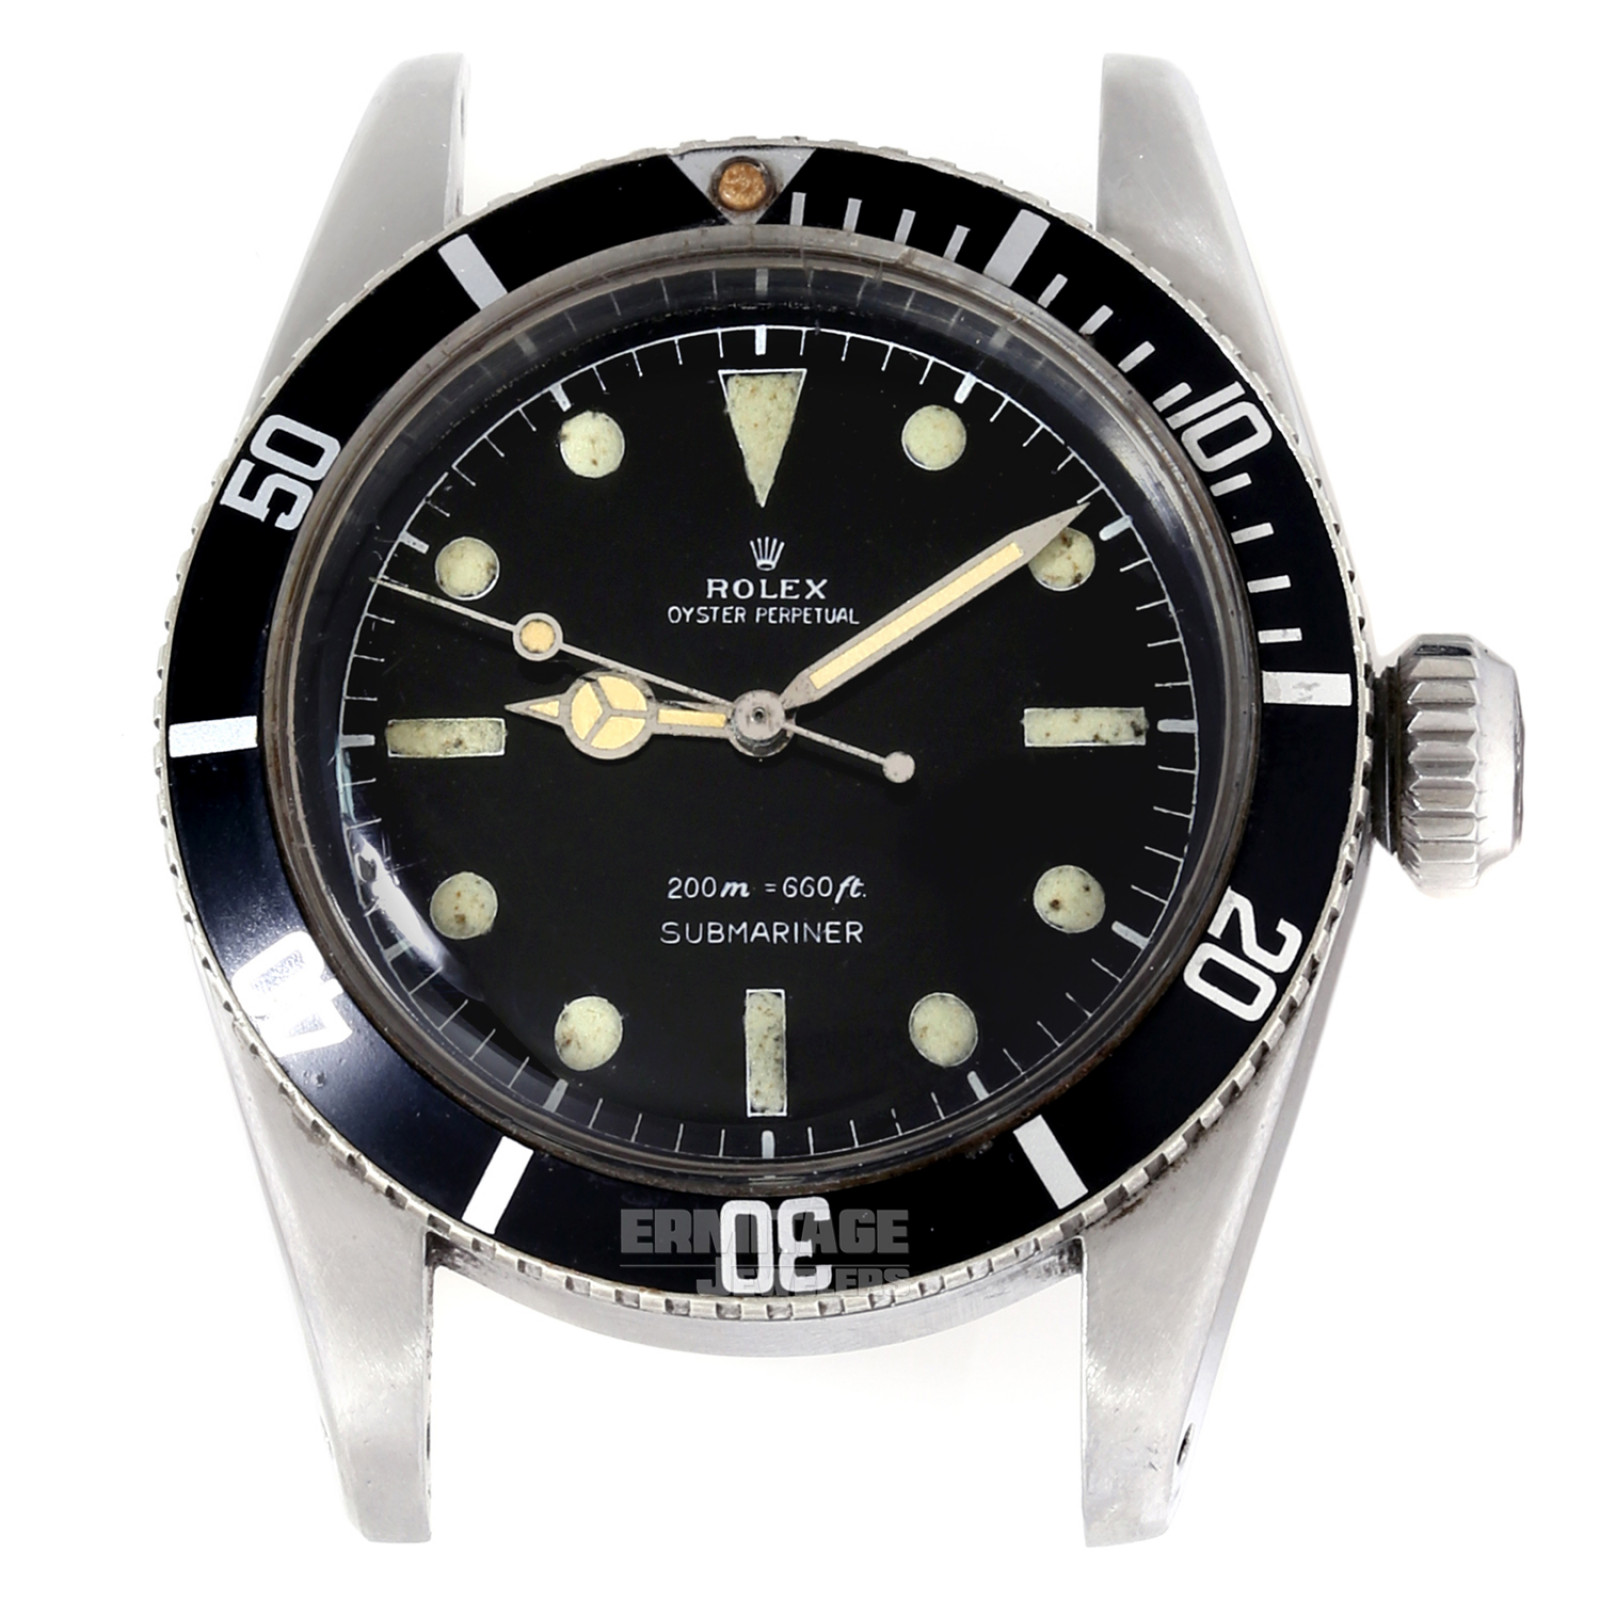 Vintage Rolex Submariner 6538